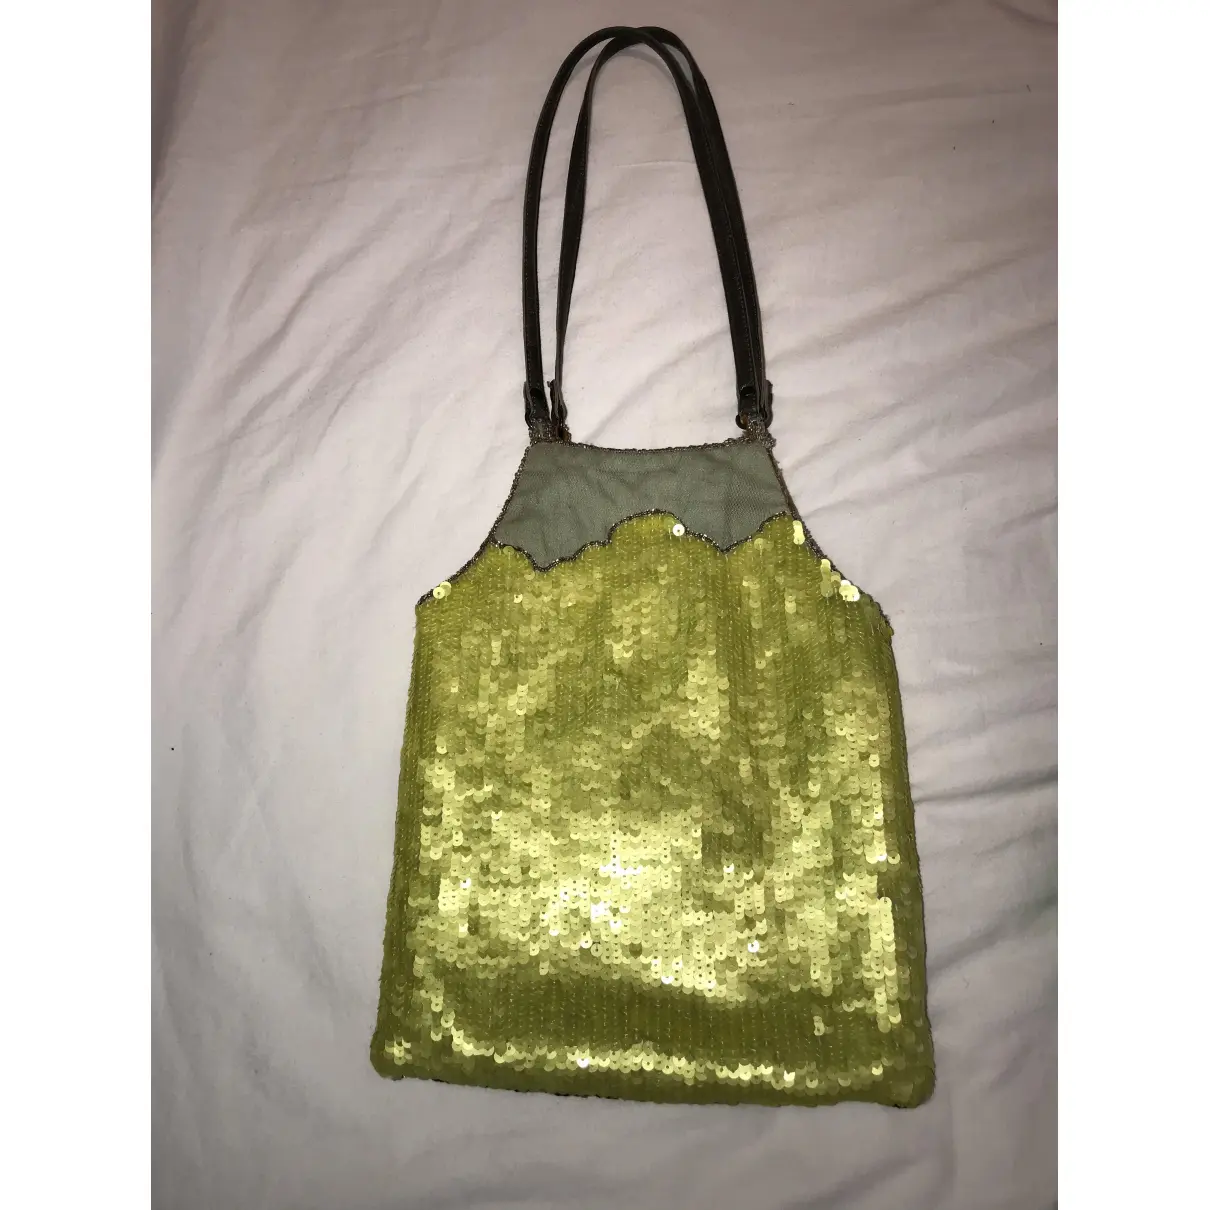 Buy Jamin Puech Silk handbag online